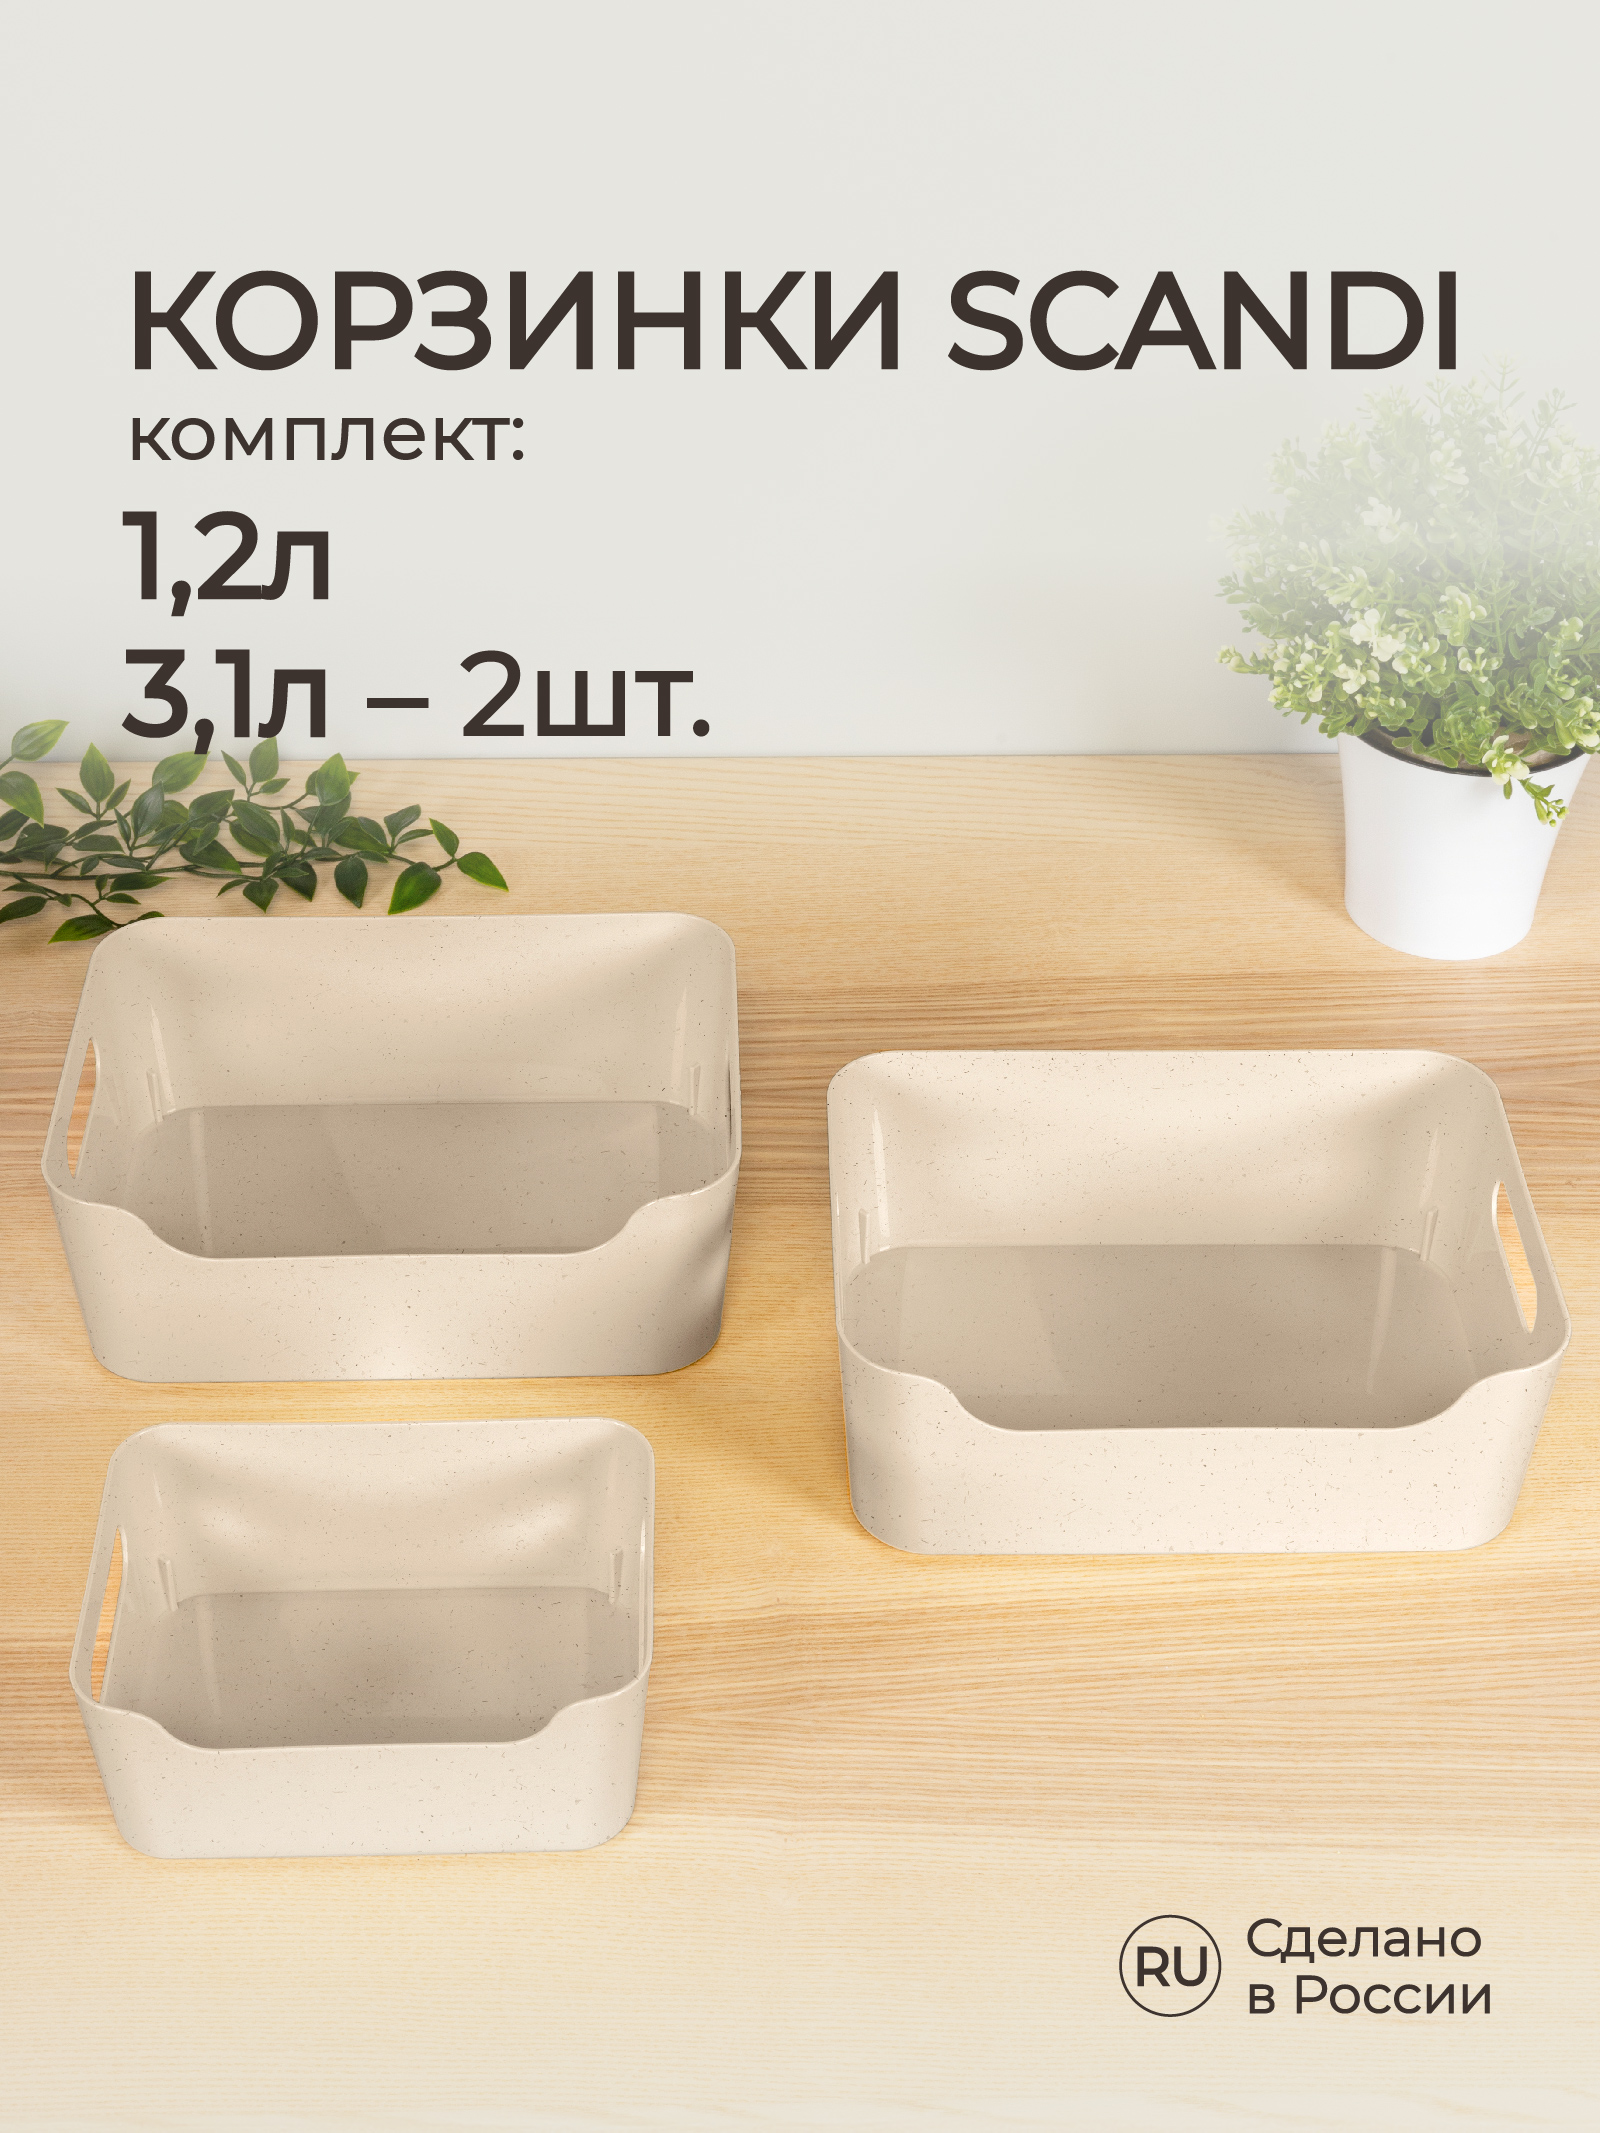 Комплект корзинок Econova универсальных Scandi 3шт 1.2л+2x3.1л бежевый флэк - фото 1